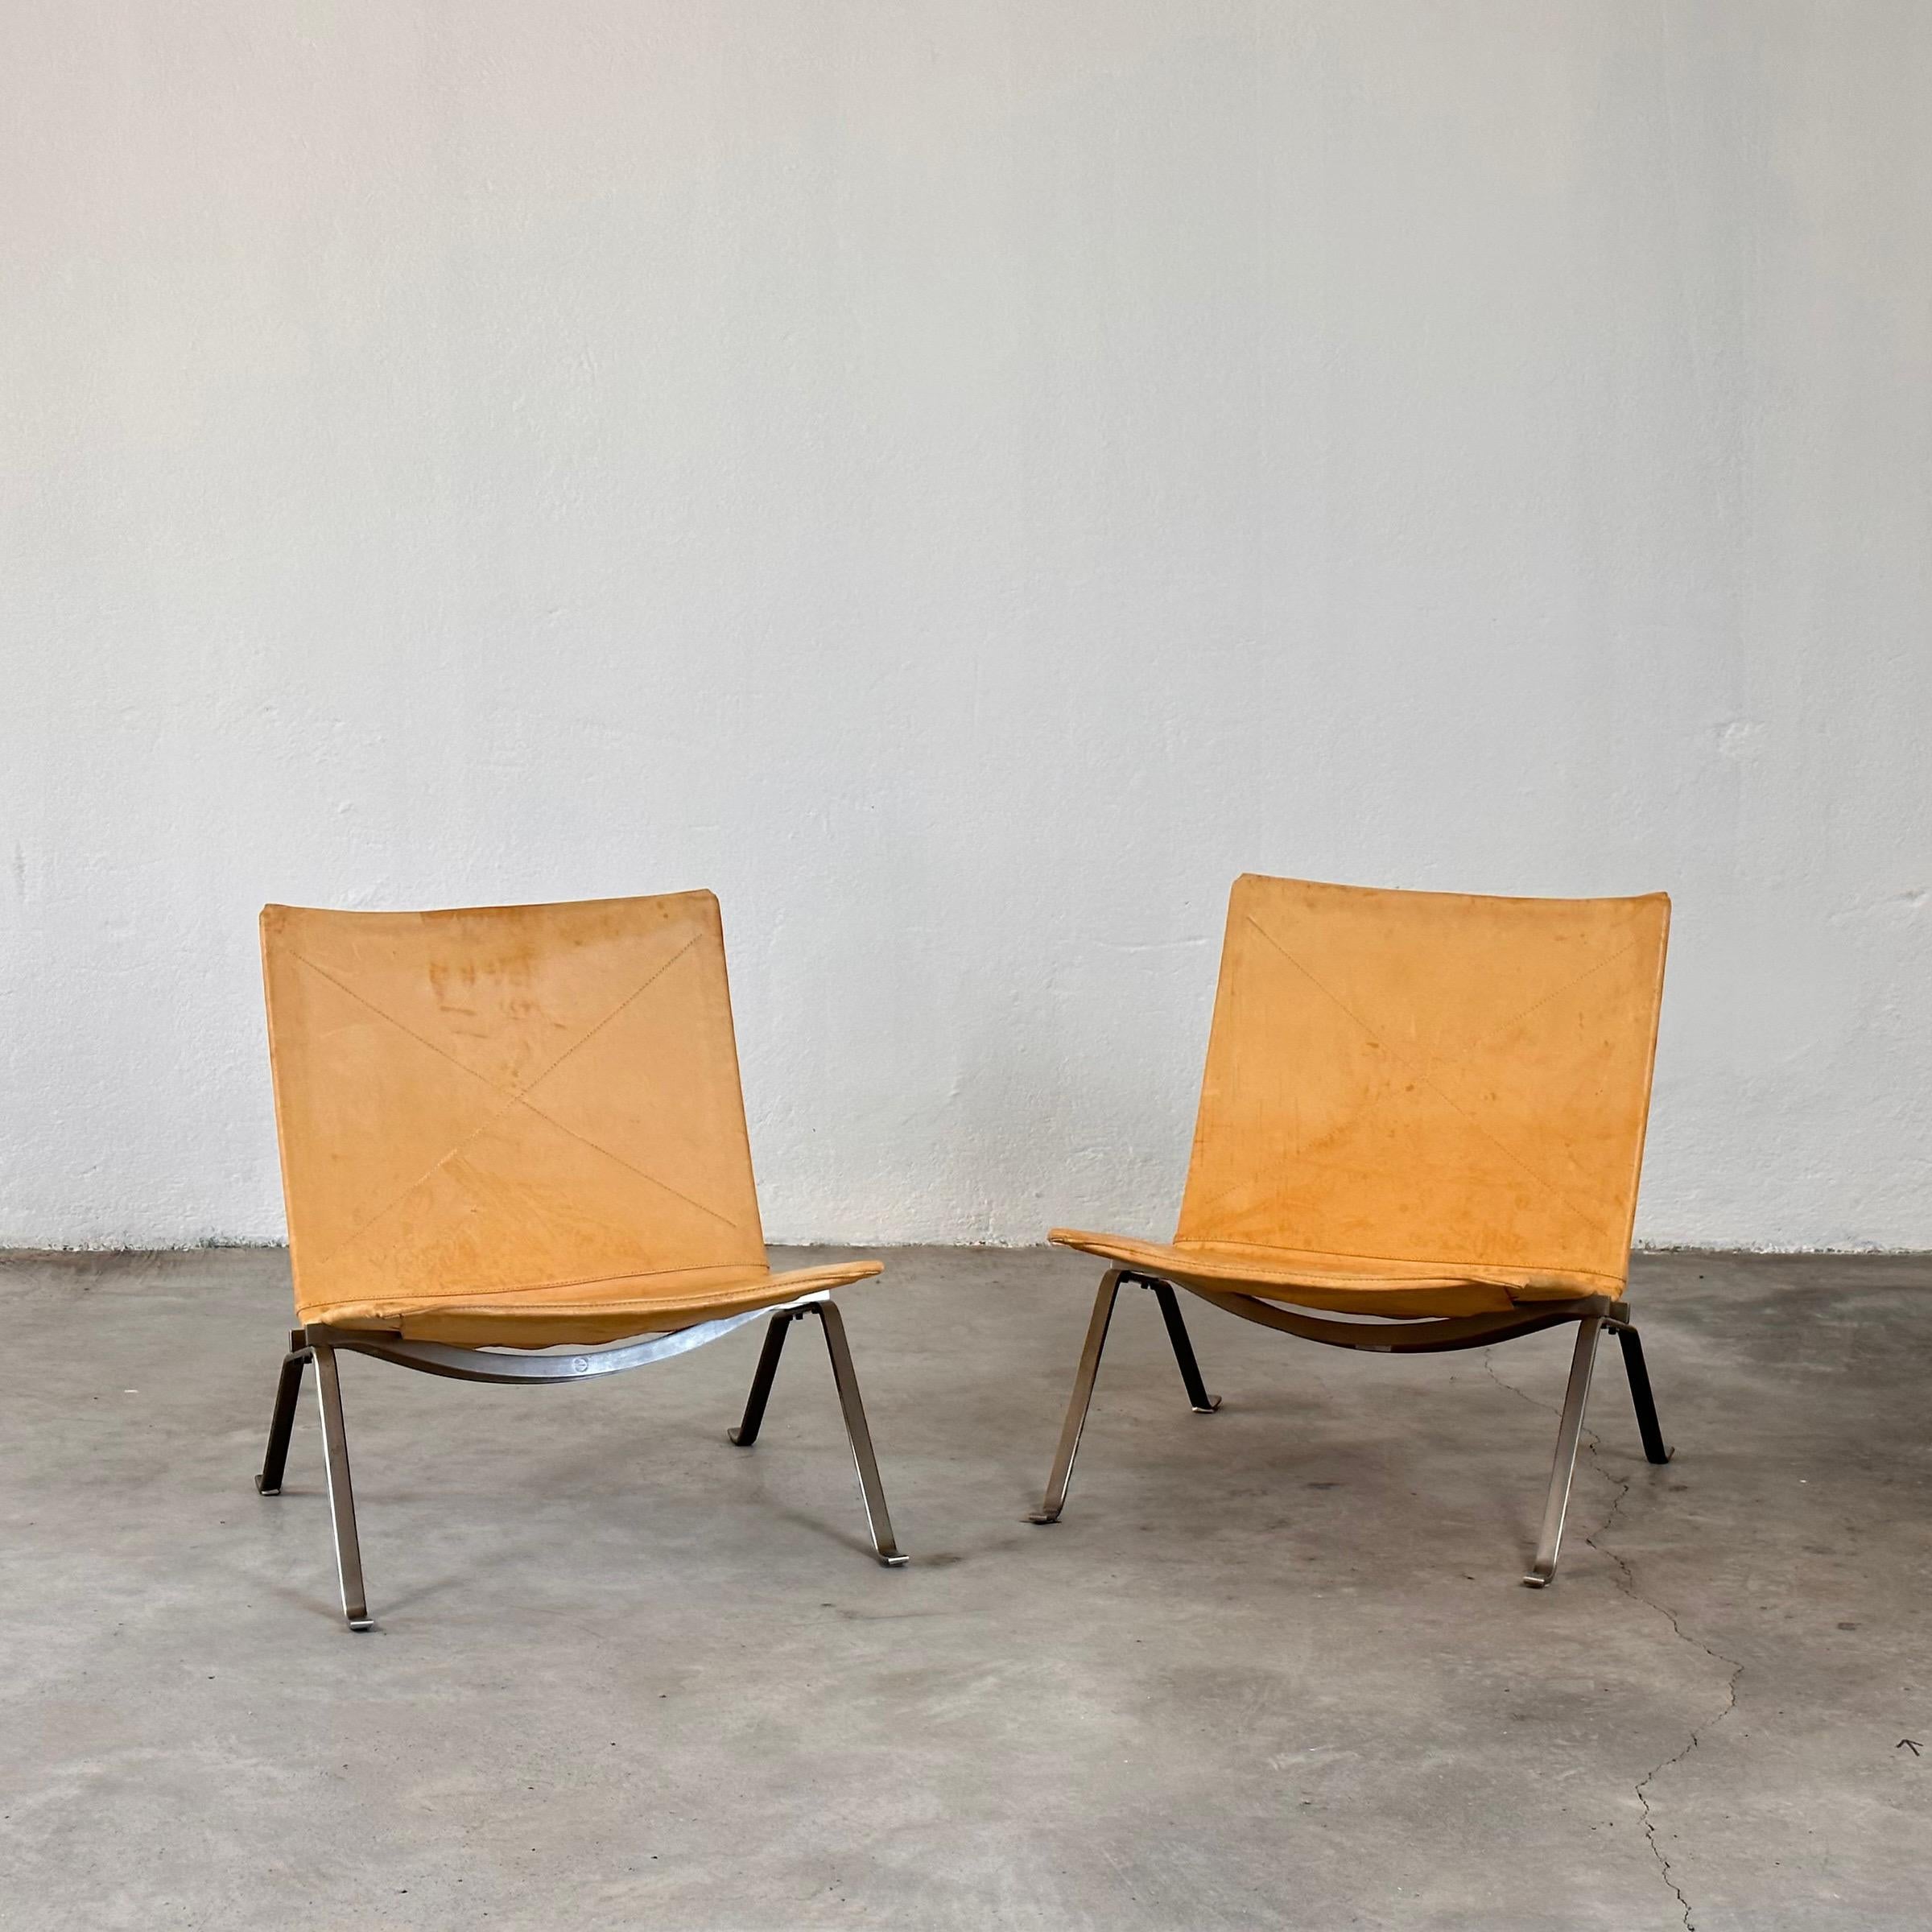 Ikonische Poul Kjaerholm PK22 Loungesessel in Leder (2003 Paar)

Entdecken Sie zeitlose Eleganz mit diesem exquisiten Paar Poul Kjaerholm PK22 Lounge Chairs, einem Zeugnis des modernen Designs aus der Mitte des Jahrhunderts. Die 1956 von Fritz